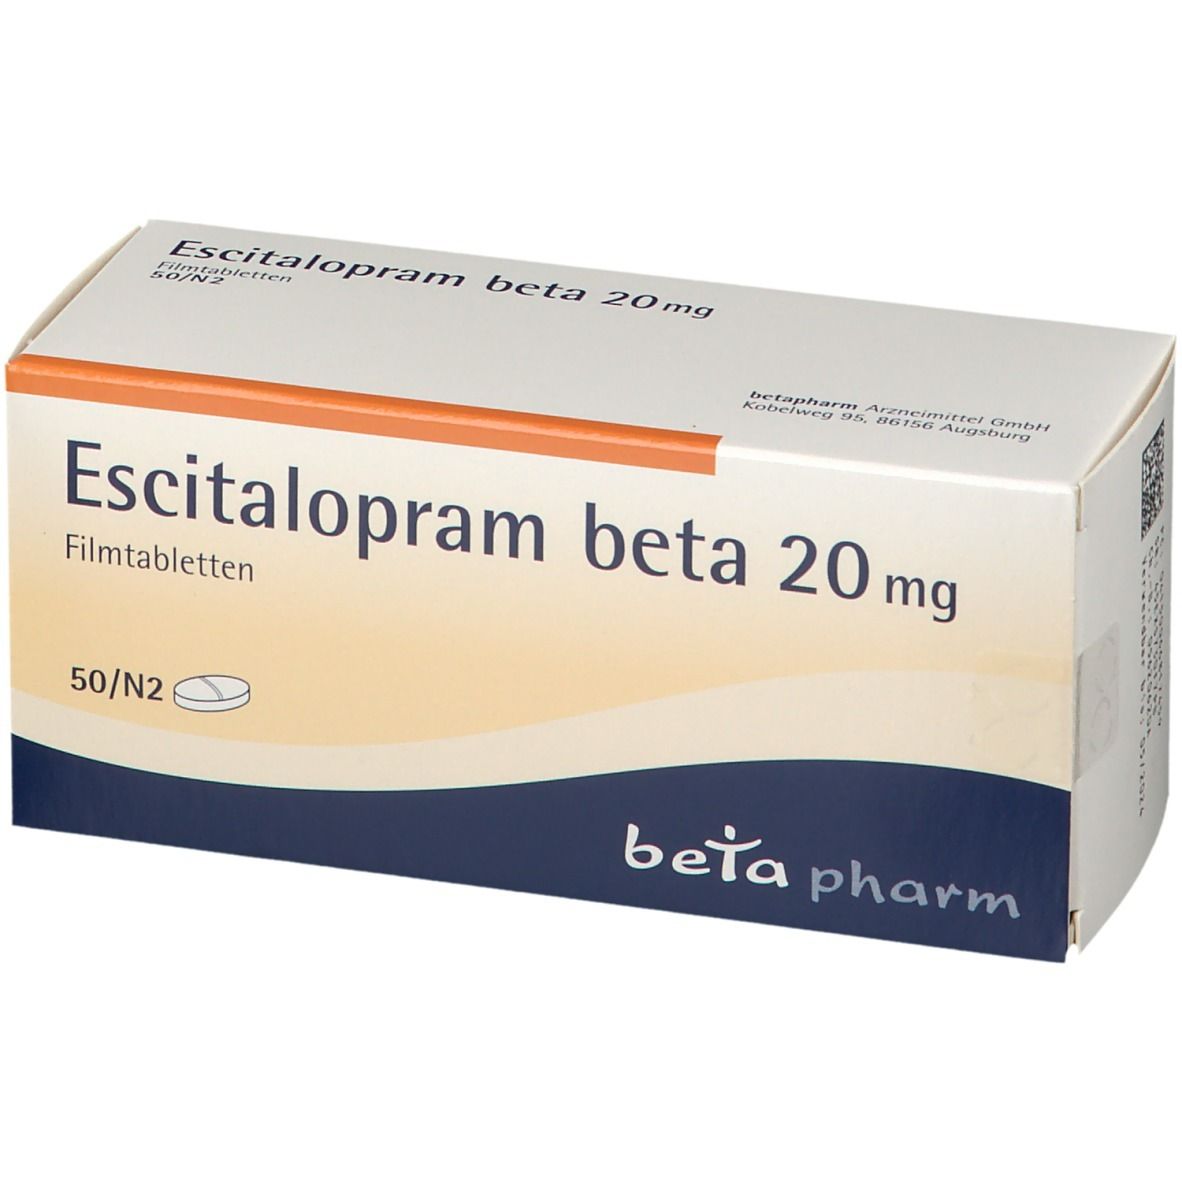 Escitalopram beta 20 mg